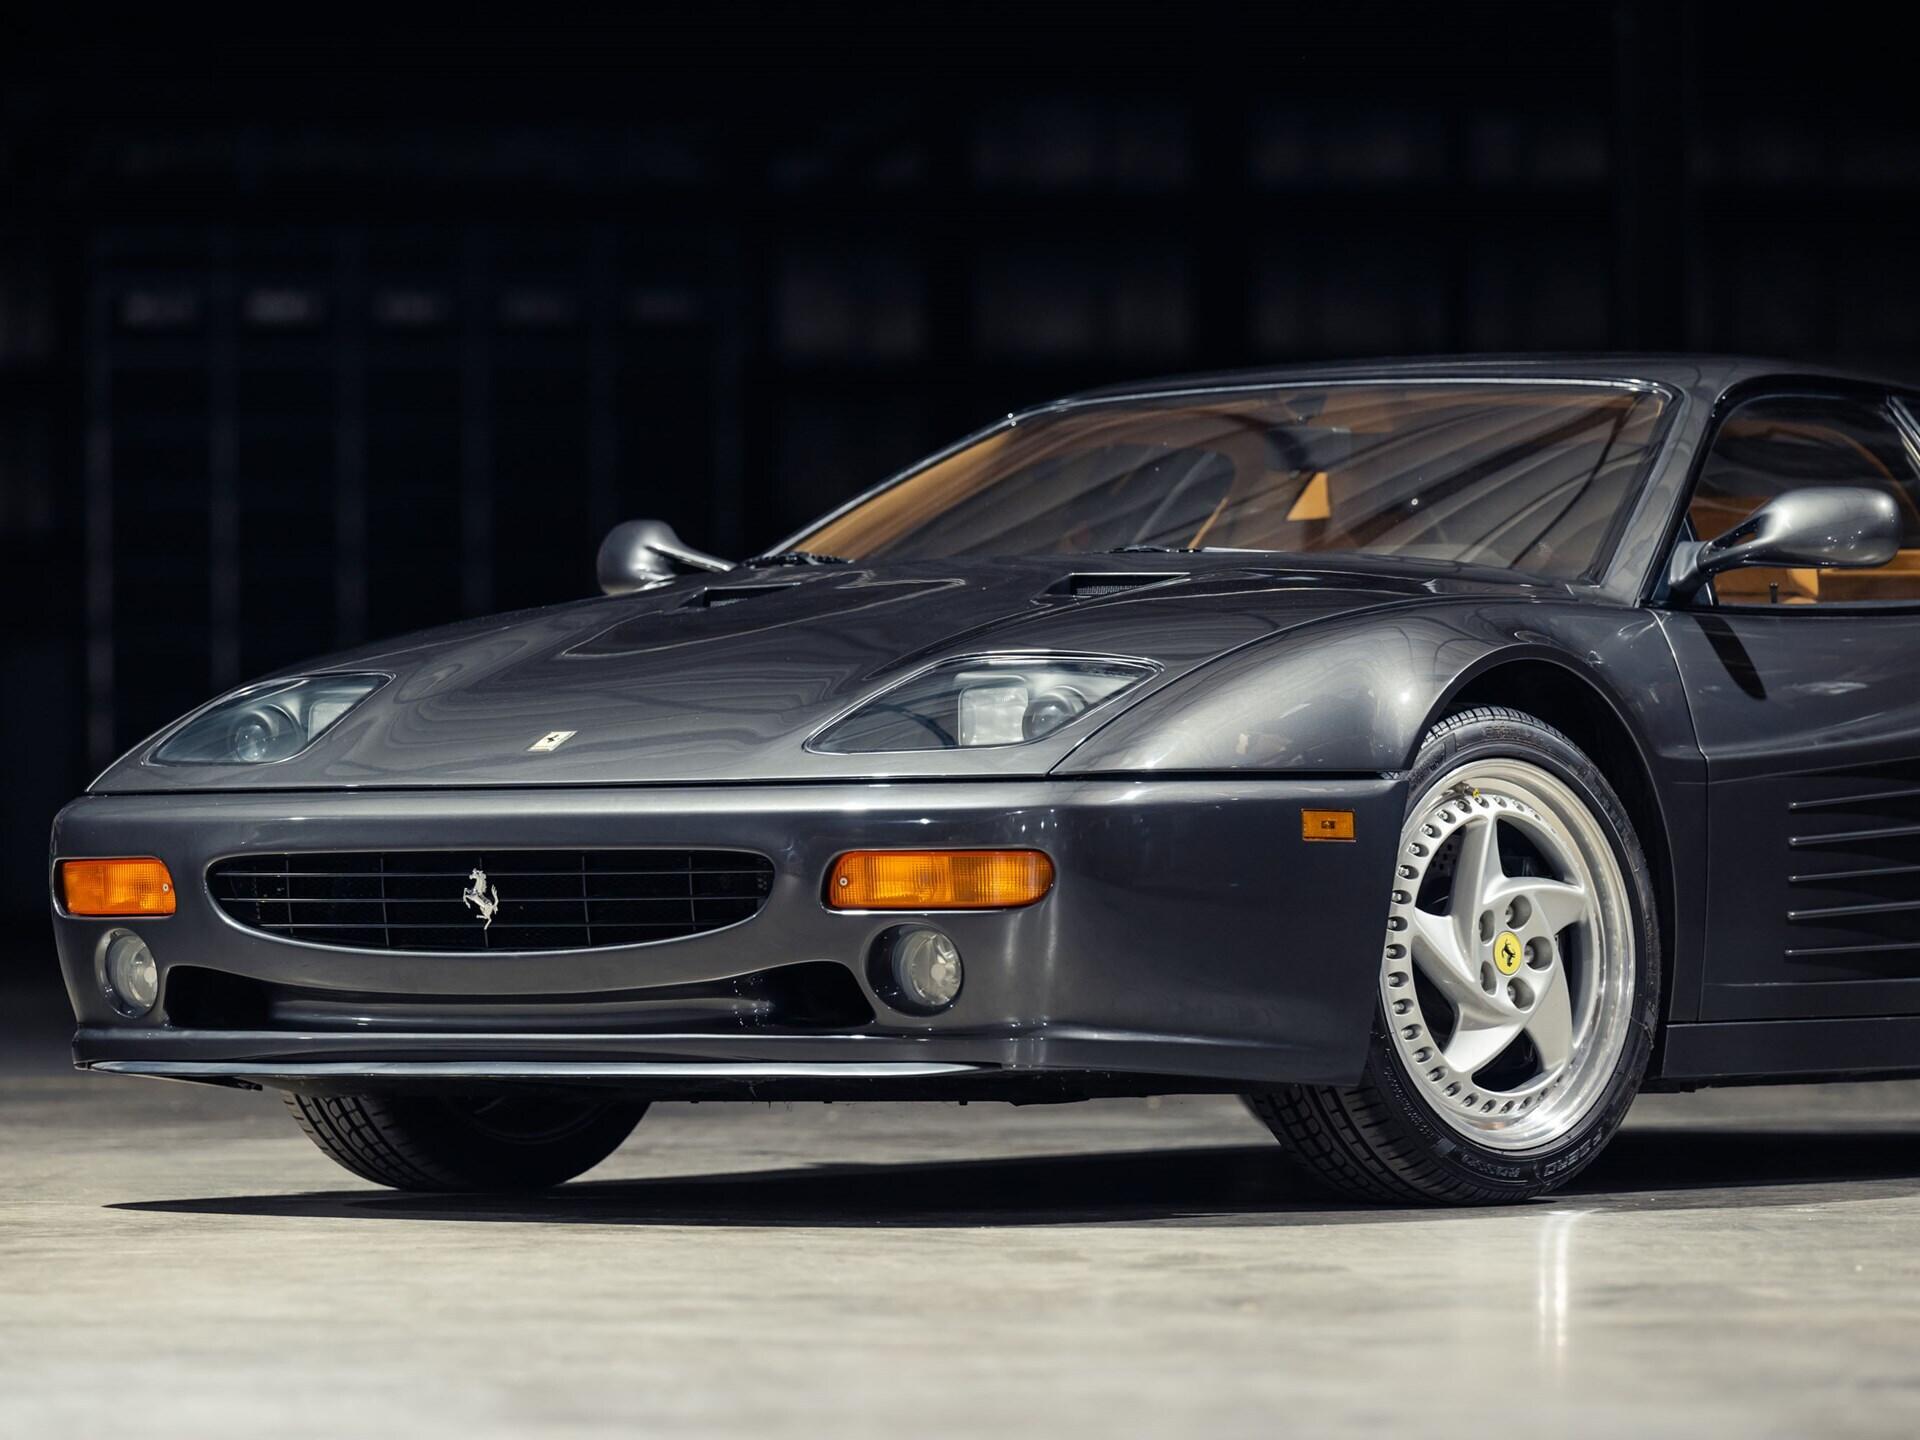 imagen 5 de Sale a subasta un espectacular Ferrari F512 M Coupe de 1995.